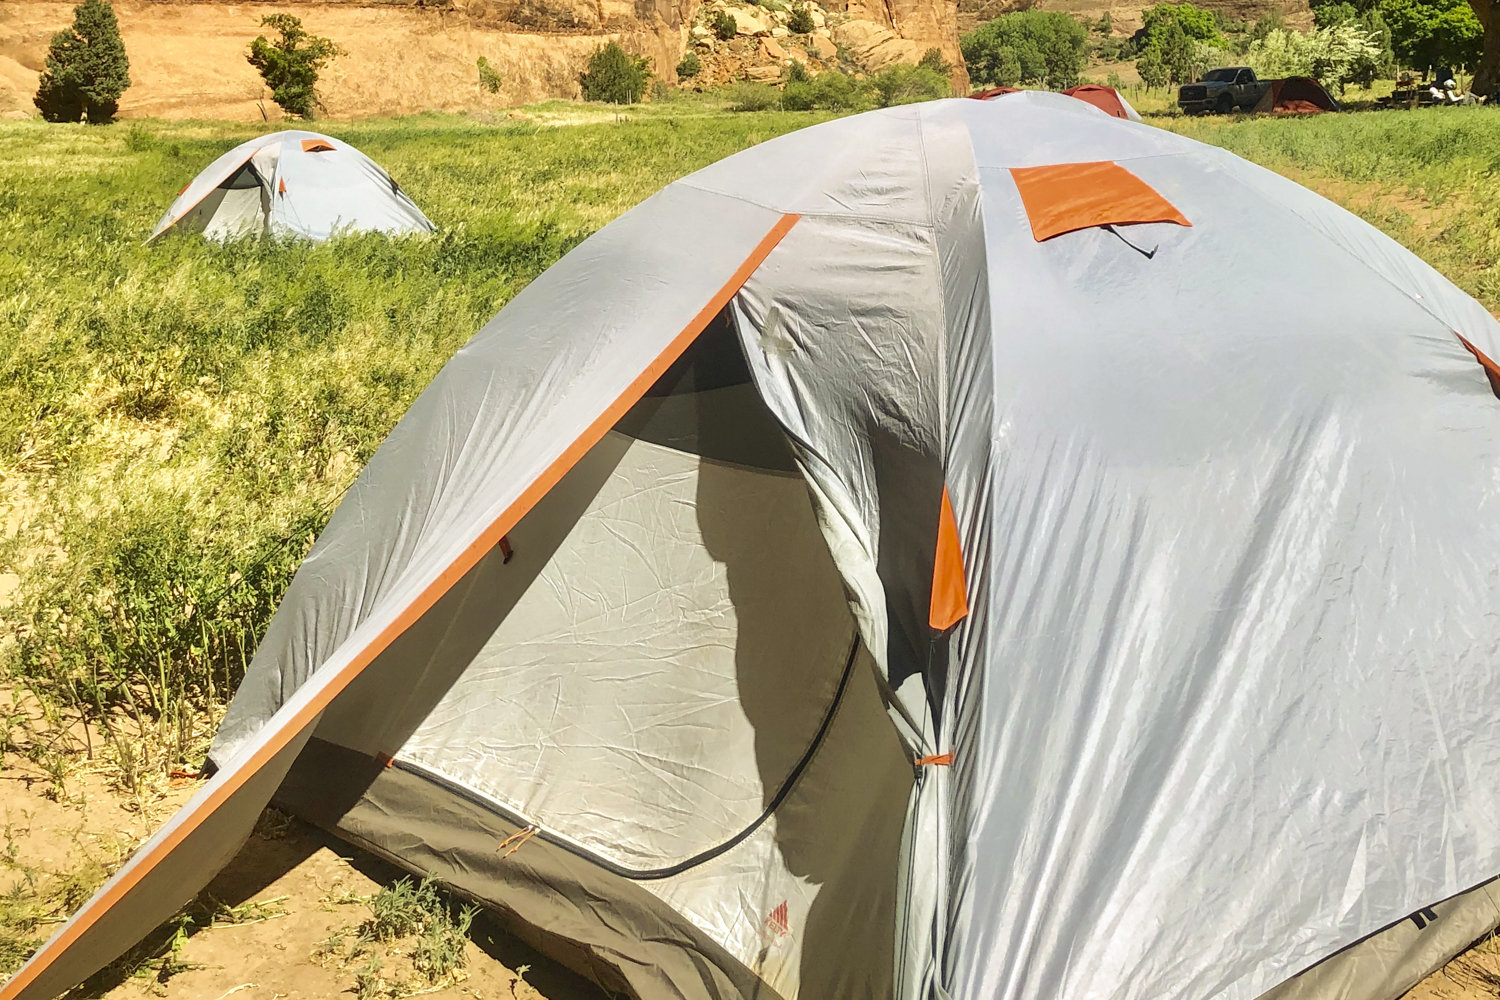 arizona canyon de chelly hike navajo rei adventures  edit 15 camping in del muerto